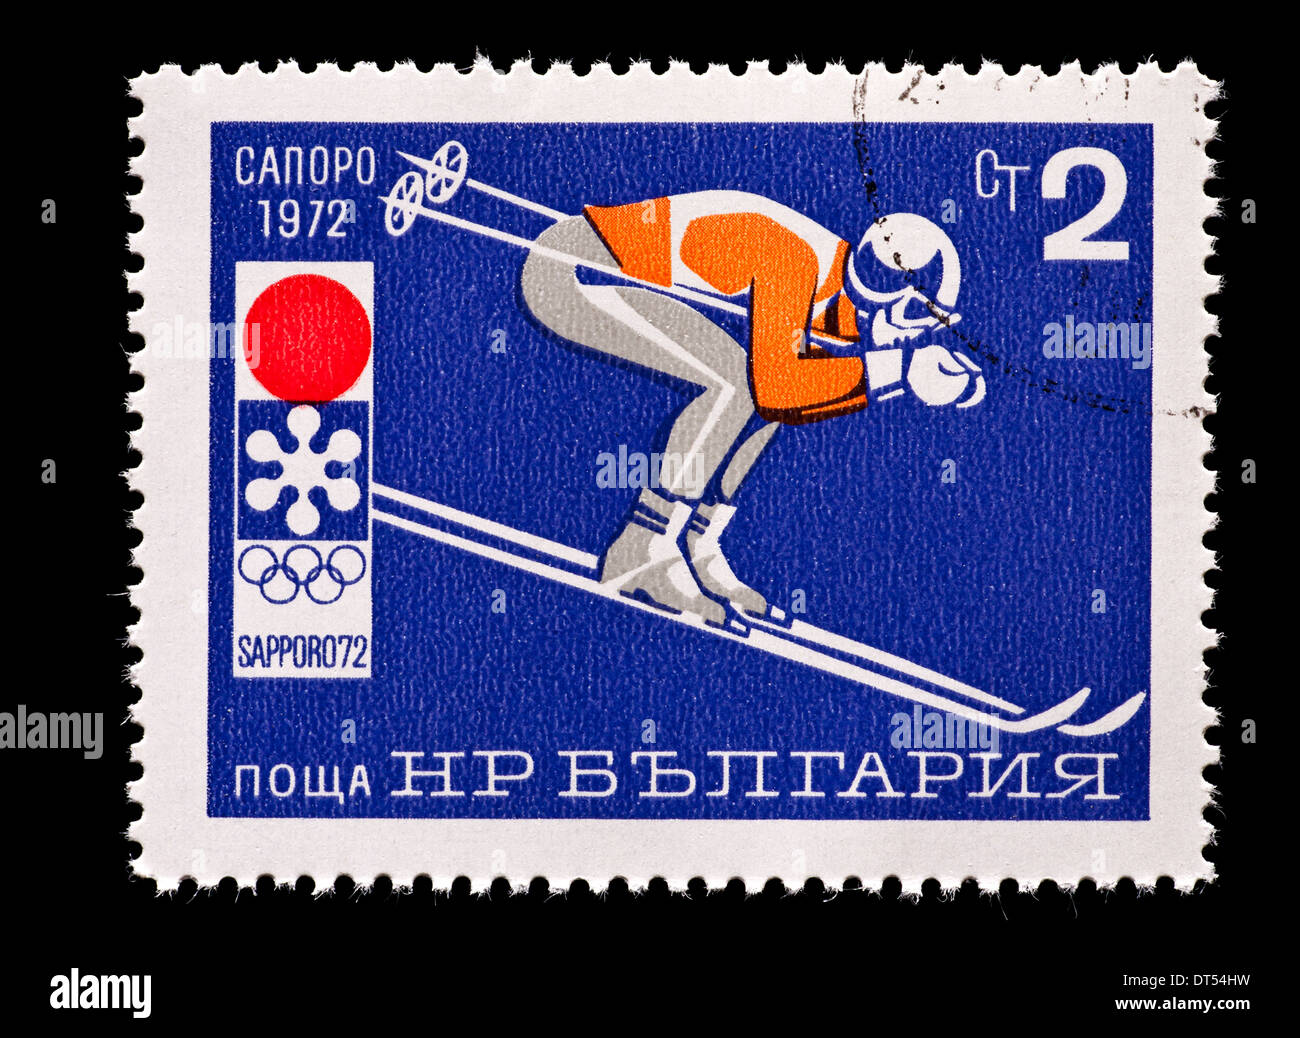 Francobollo dalla Bulgaria raffigurante una discesa sciatore, rilasciati per le Olimpiadi invernali del 1972 a Sapporo, Giappone, 1972. Foto Stock